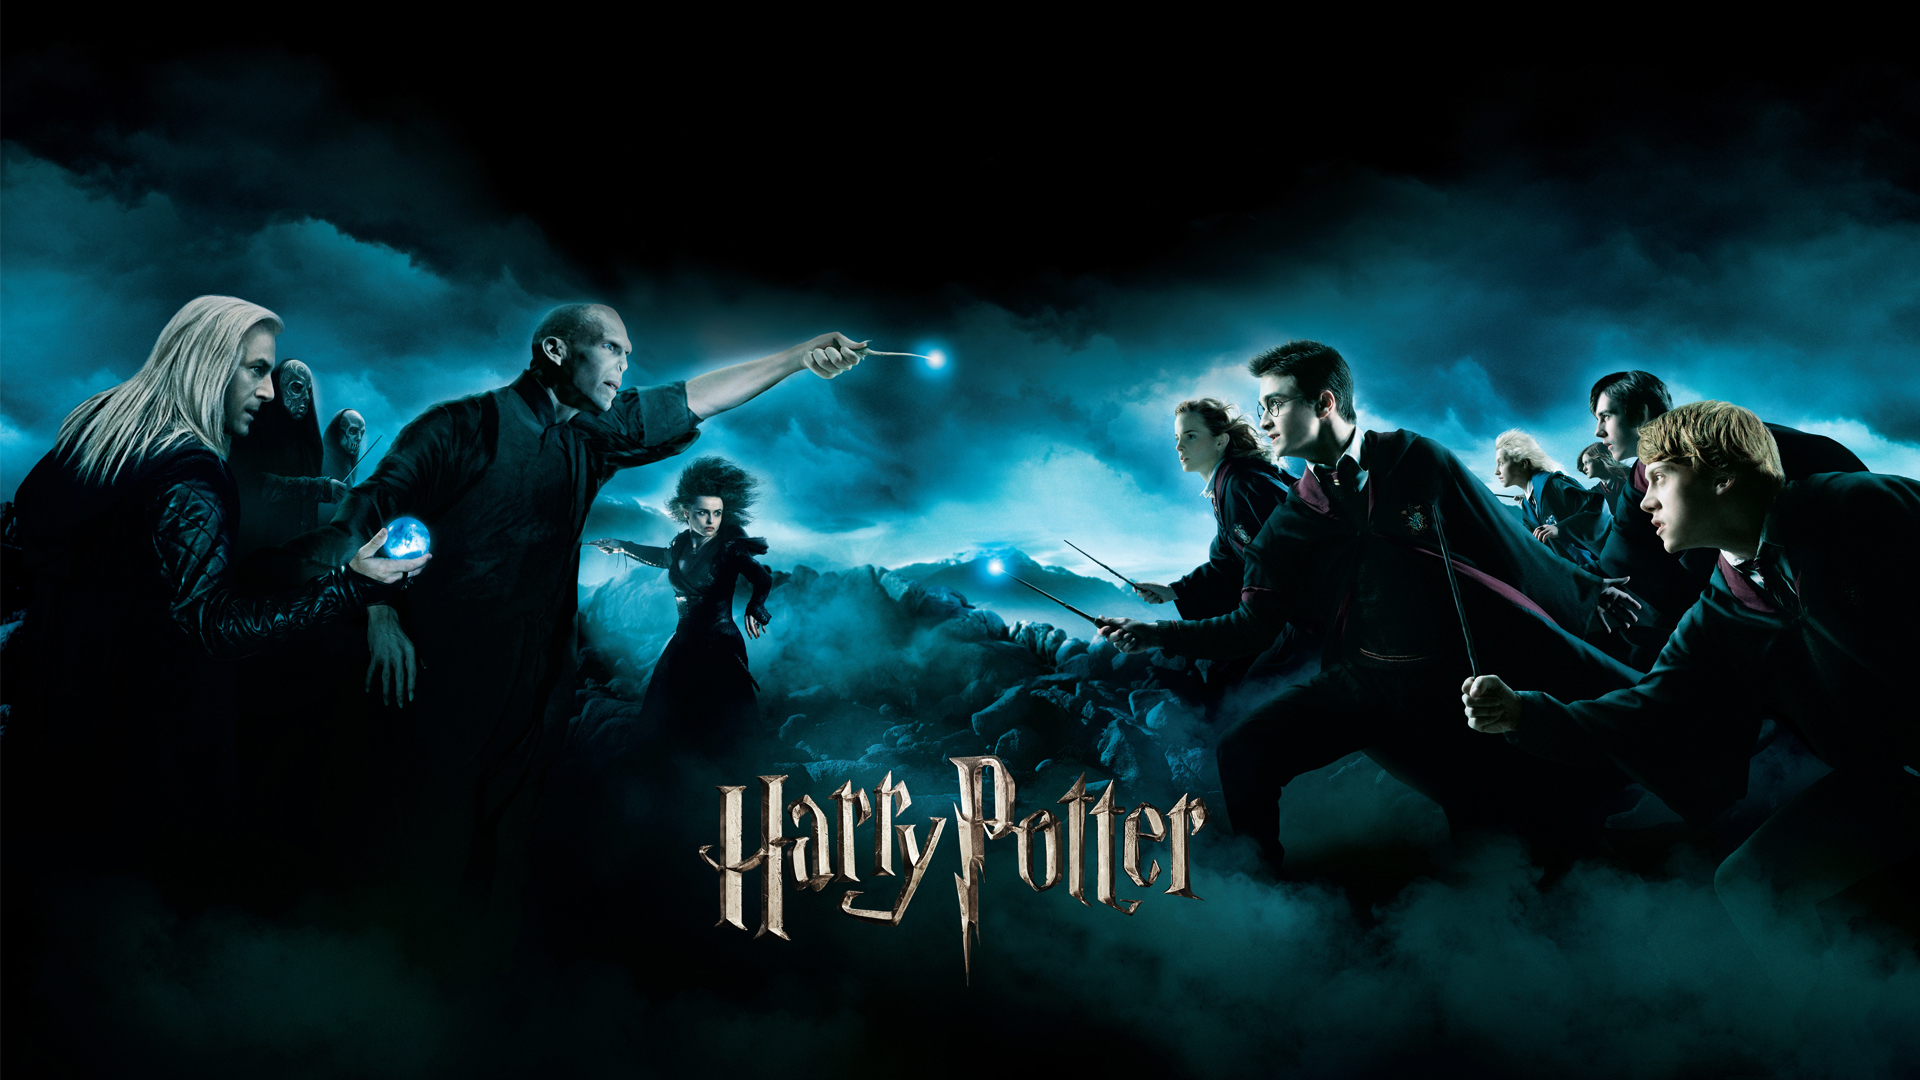 Harry Potter Wallpaper Pc Ansj14o 4usky